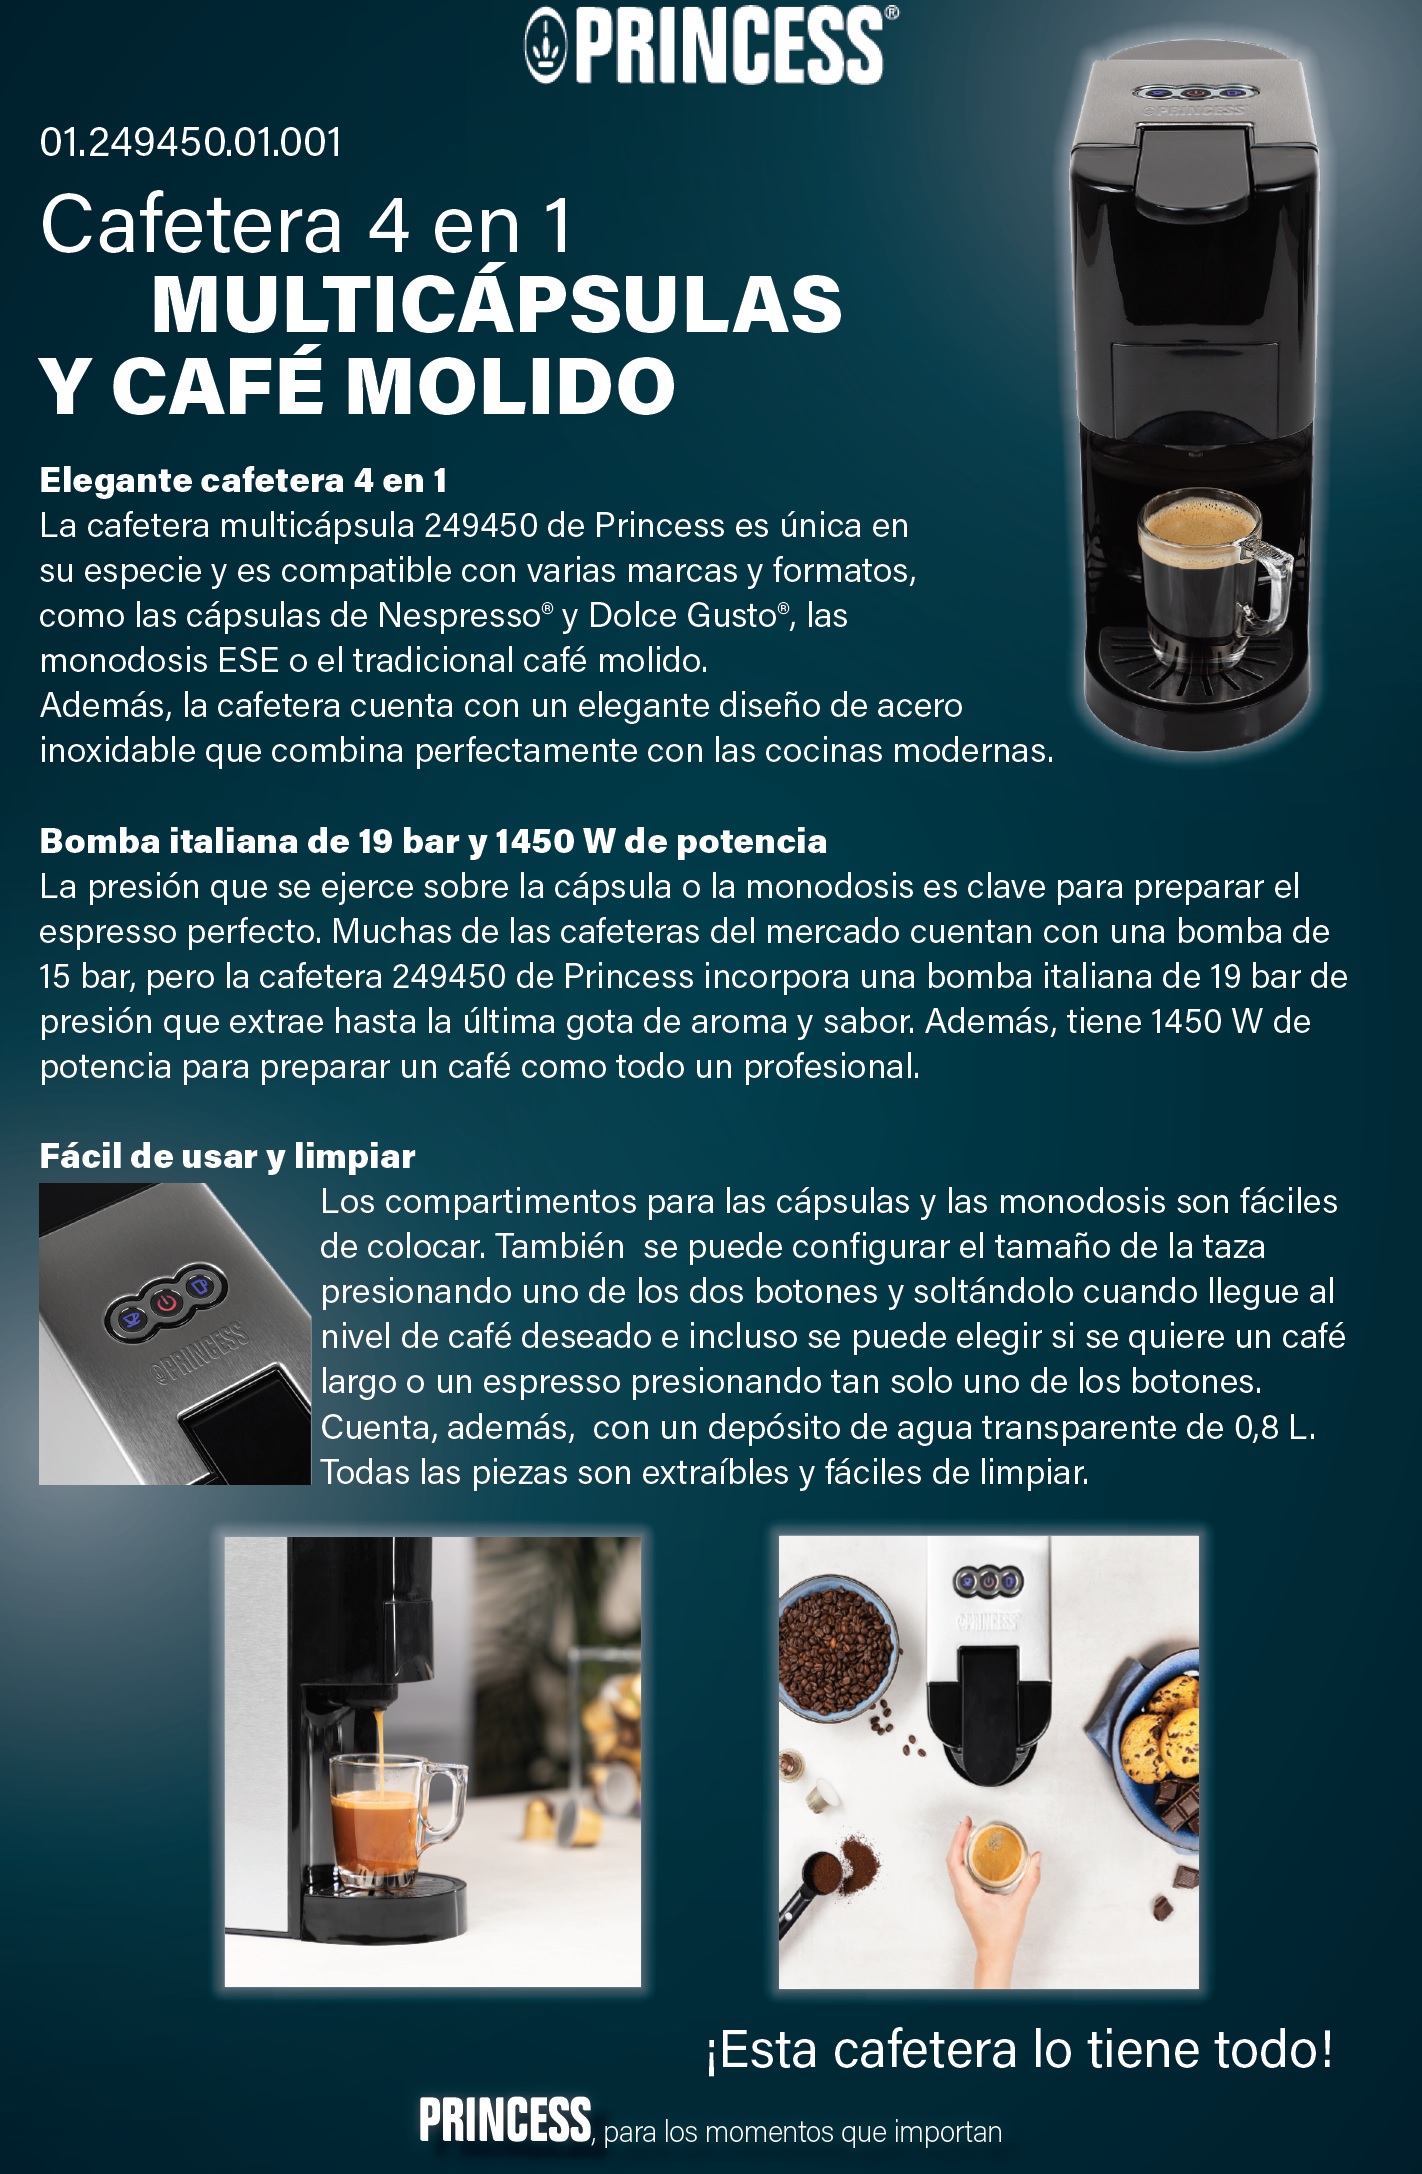 Cafetera Multicapsulas 4 En 1 - Cafeteras - AliExpress